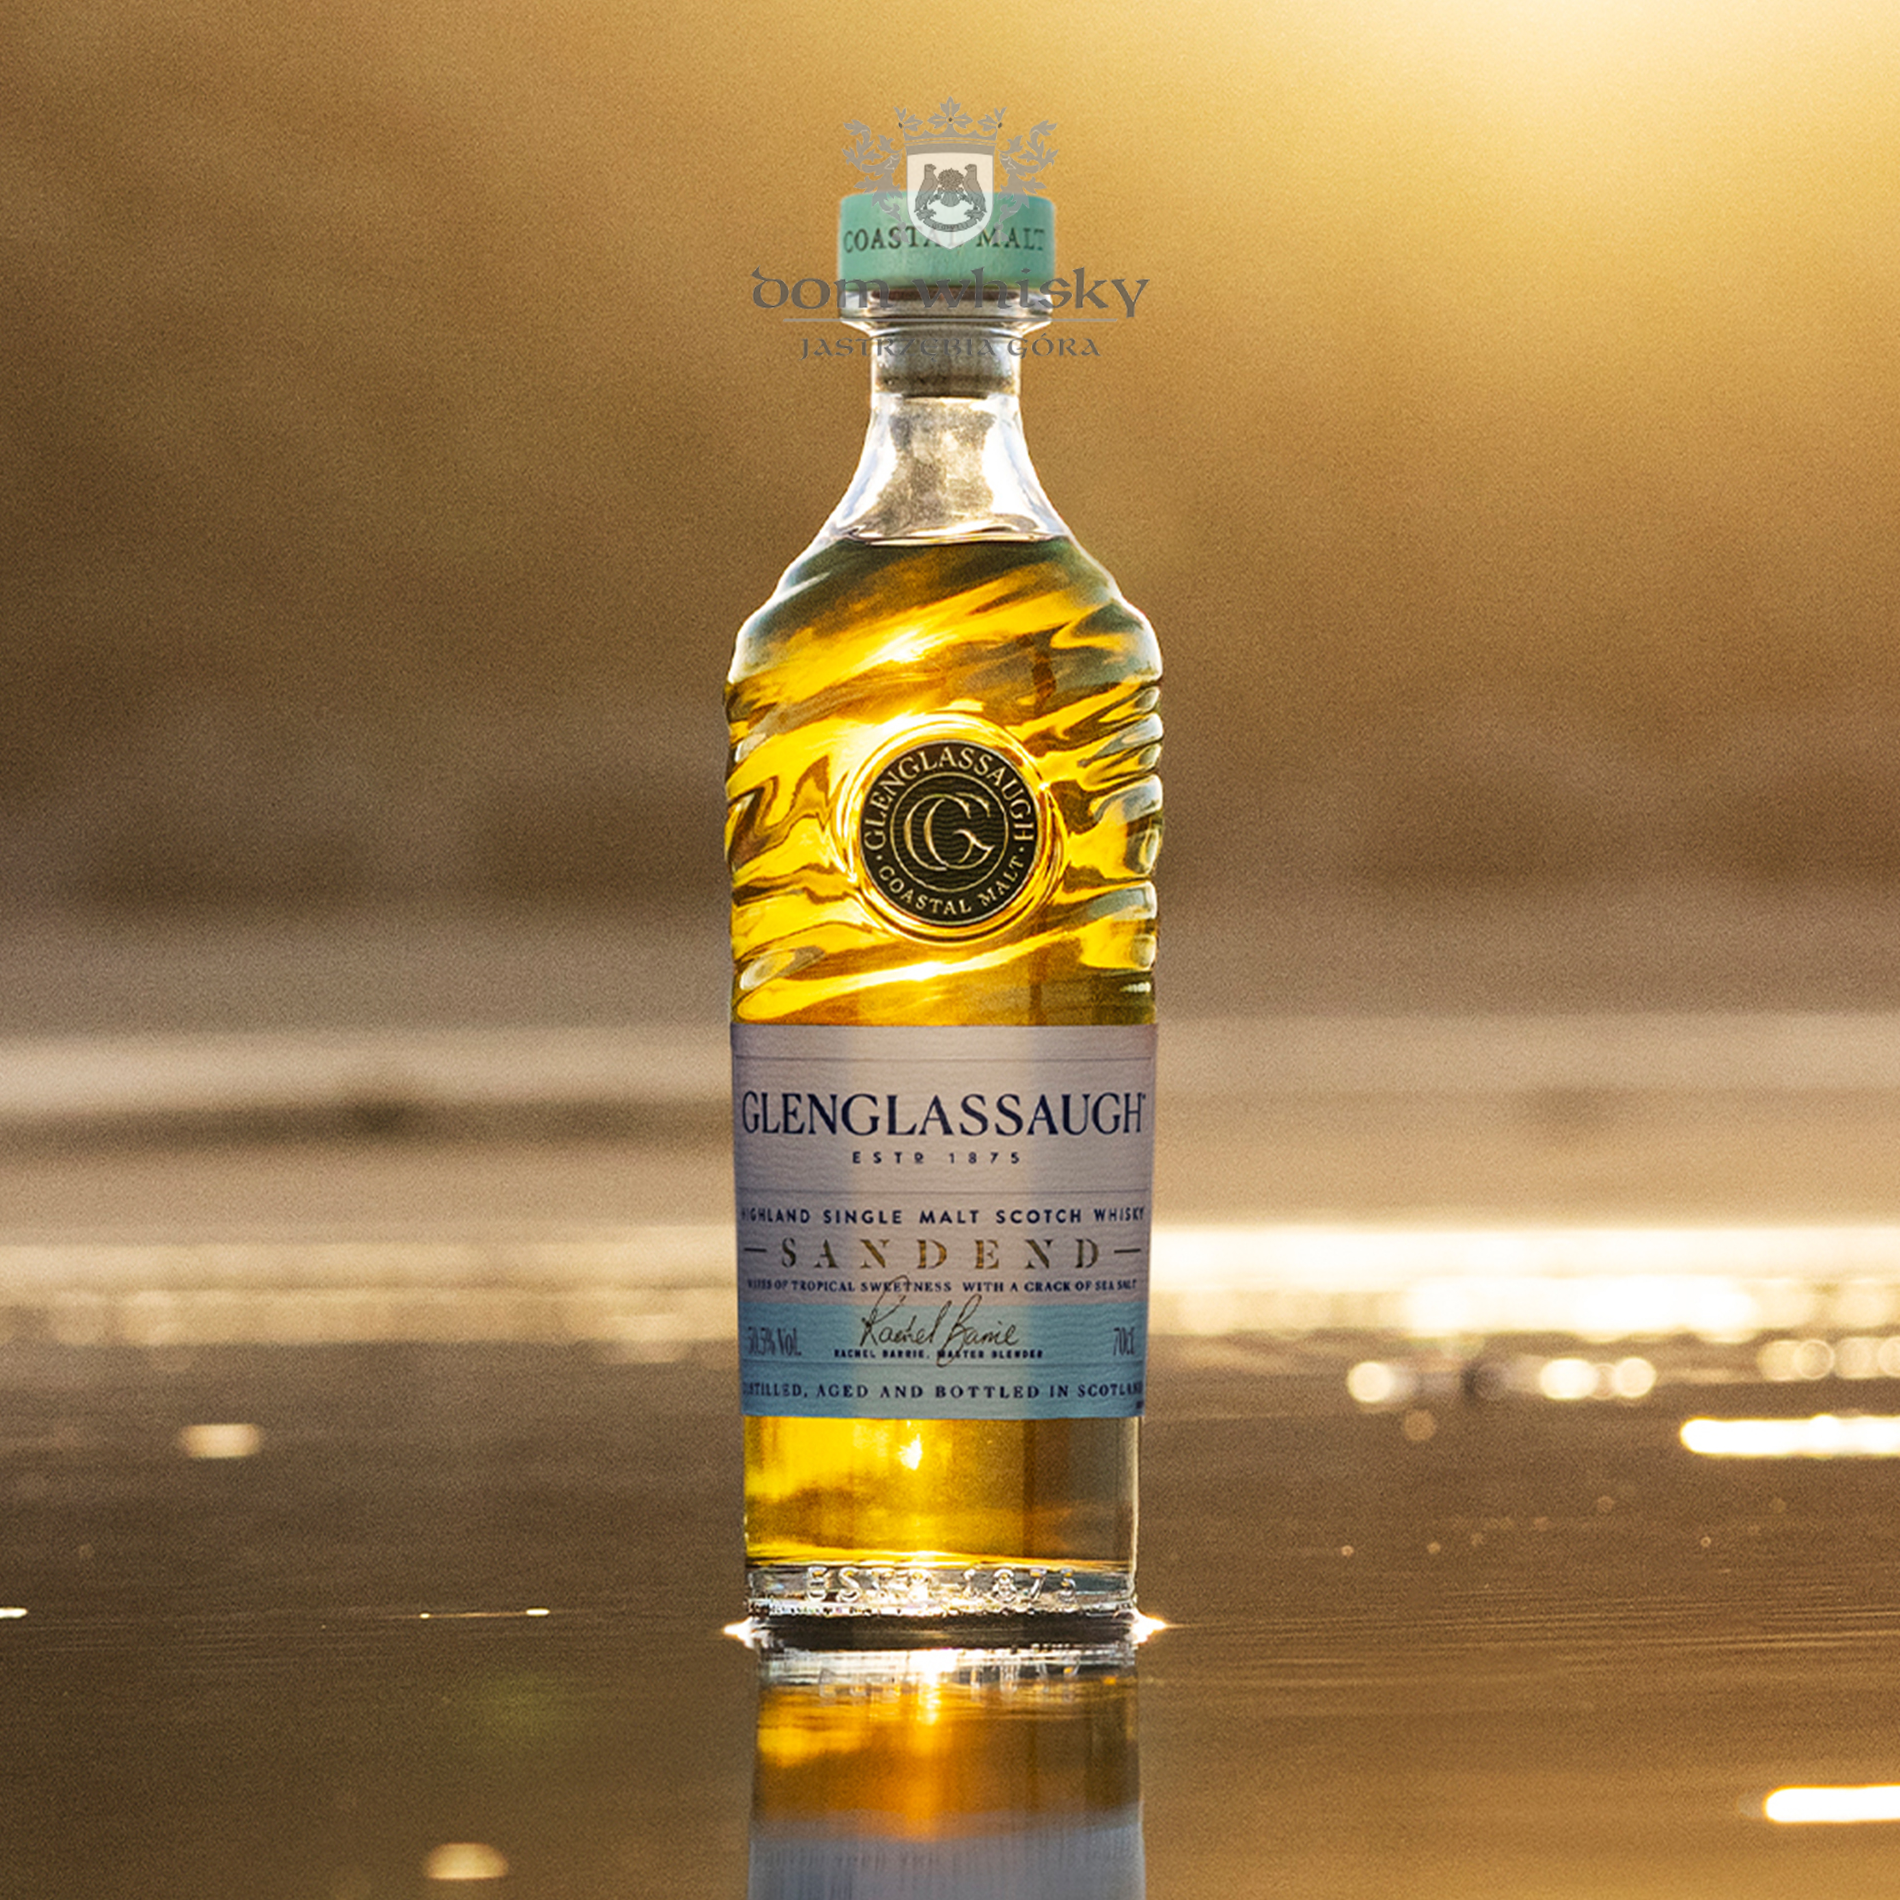 Glenglassaugh - Sandend Single Malt Scotch Whisky